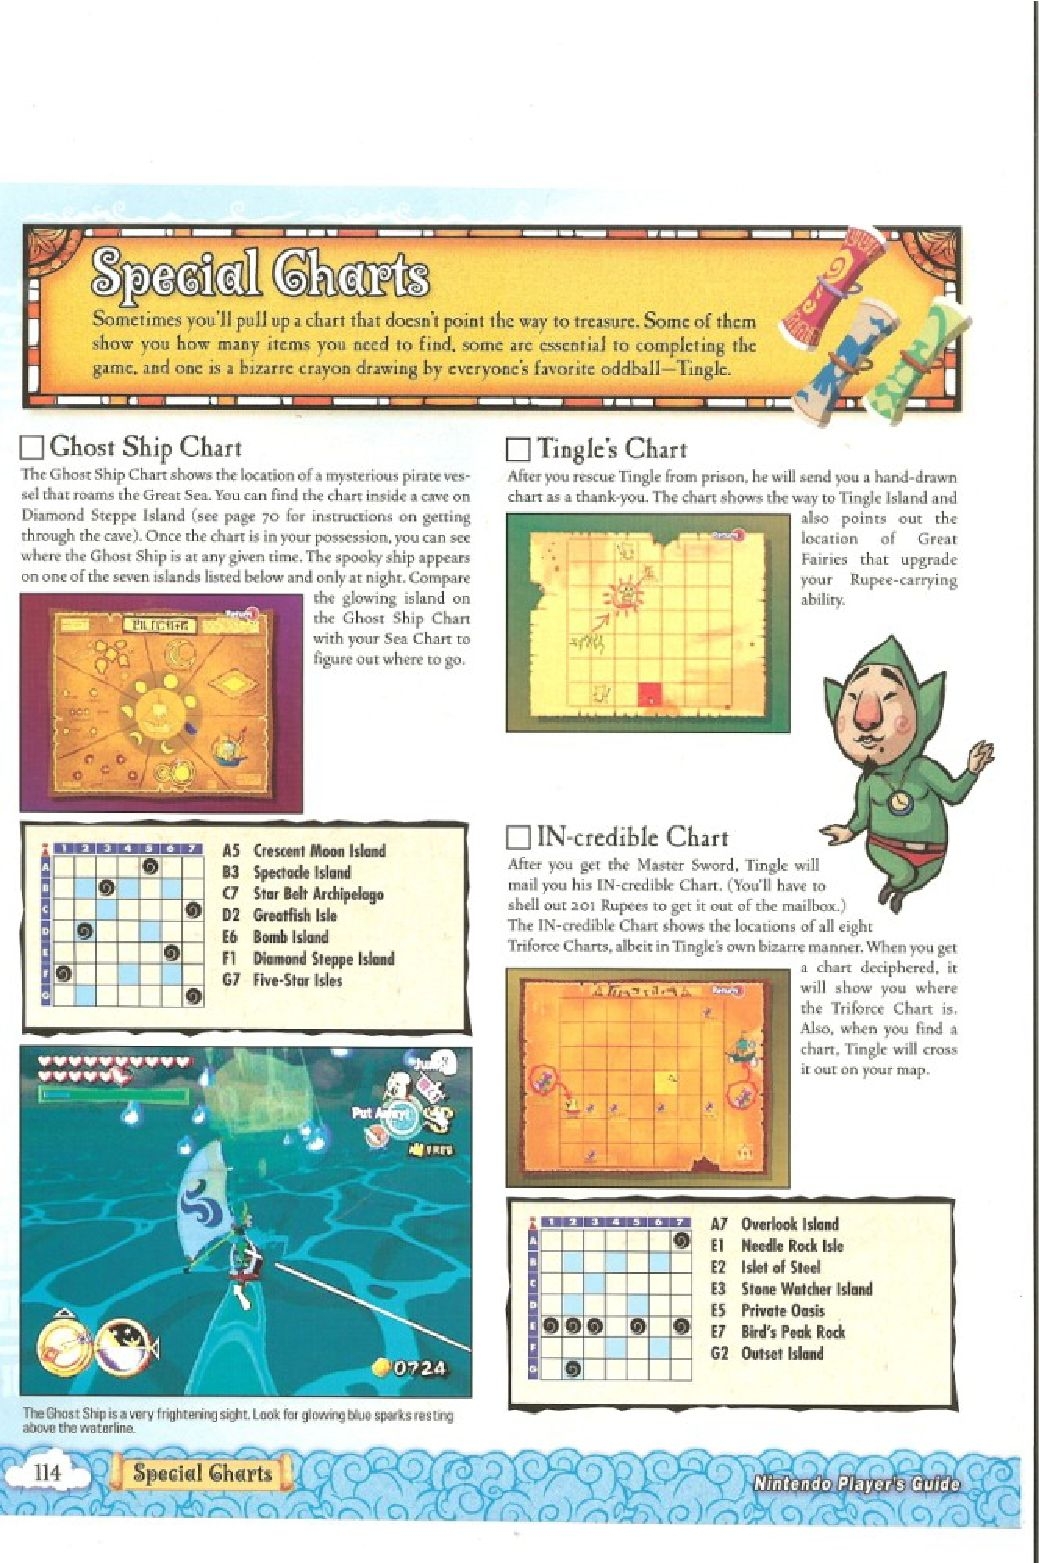 The Legend of Zelda - wind waker - Strategy Guide 116